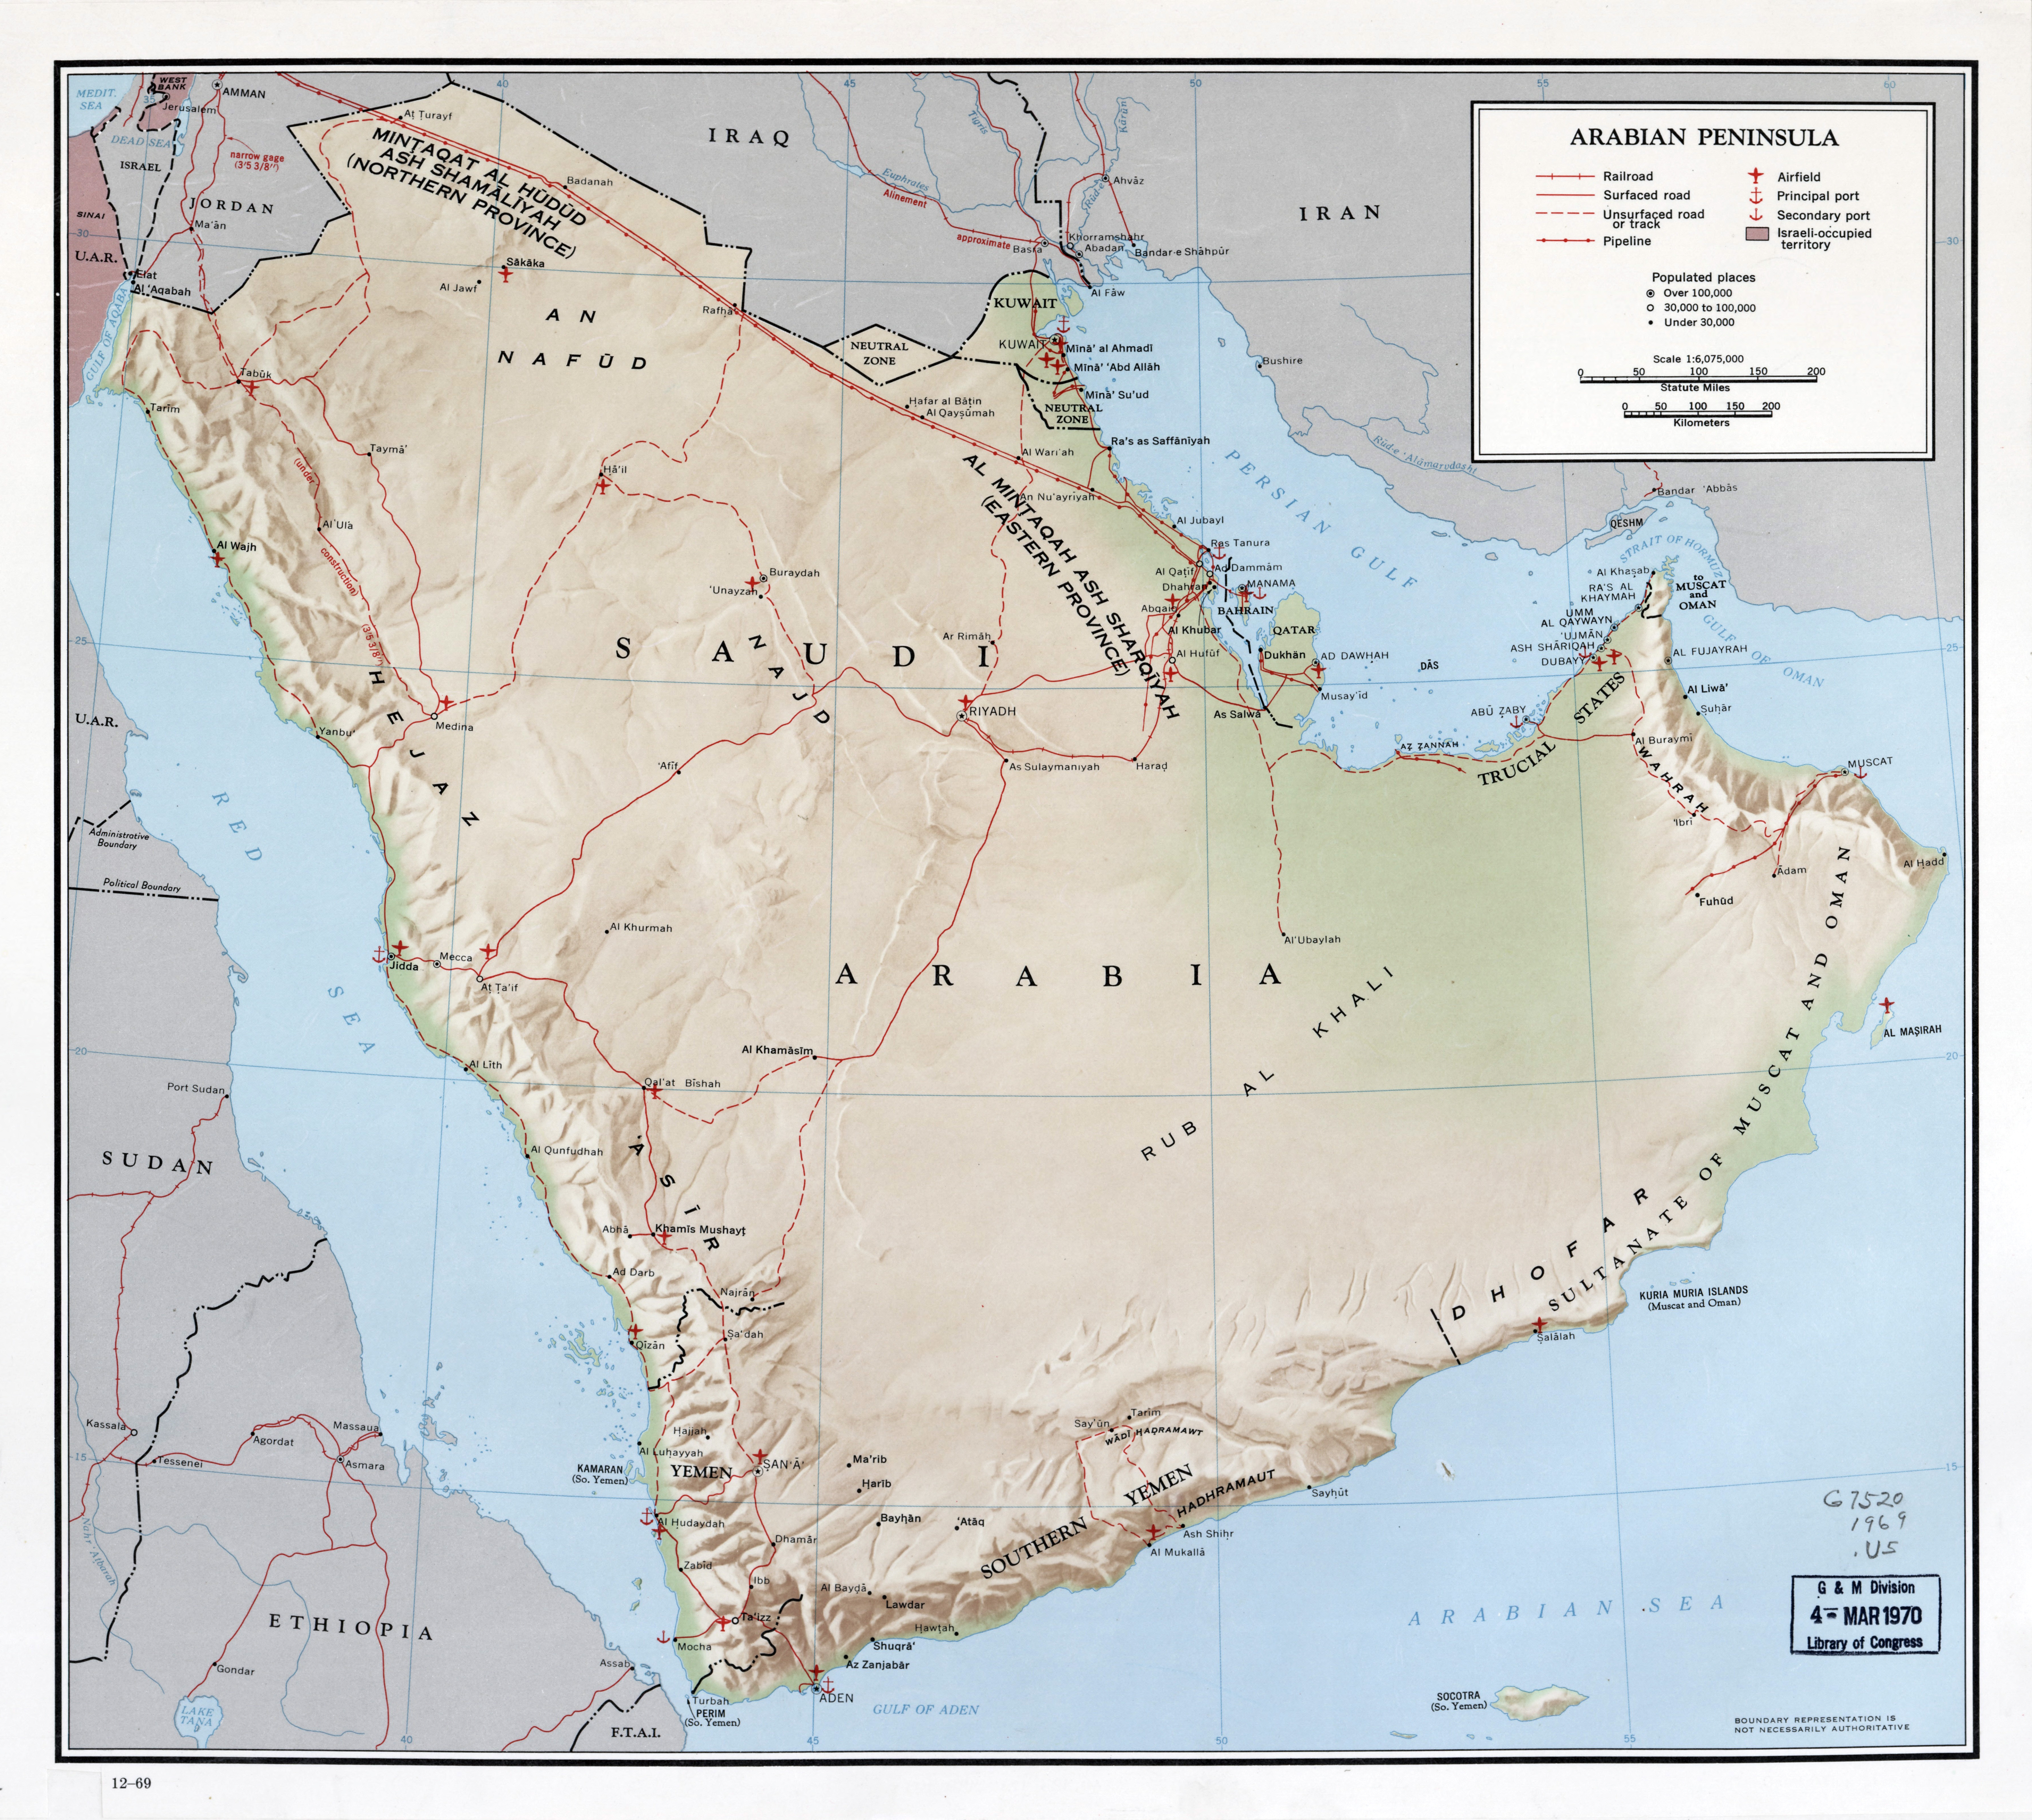 Крупномасштабная карта Аравийского полуострова с рельефом, дорогами,железными дорогами, трубопроводами, портами, аэропортами, городами идругими пометками - 1969